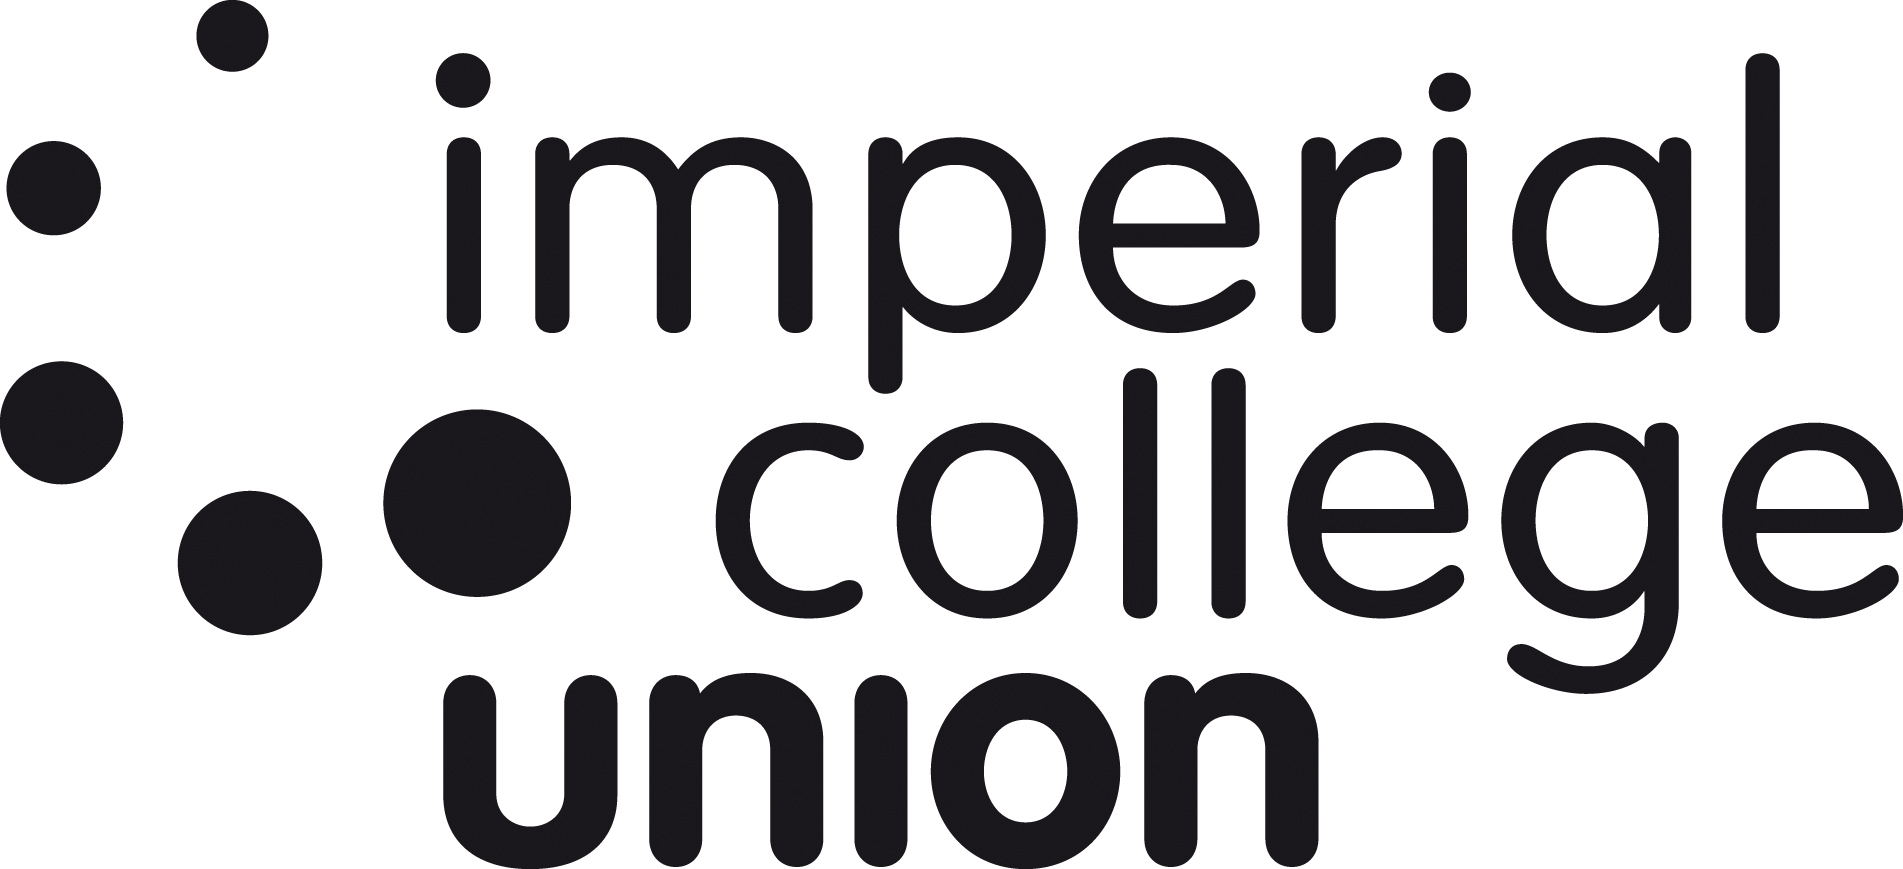 Aggregate 74+ imperial college london logo best - ceg.edu.vn